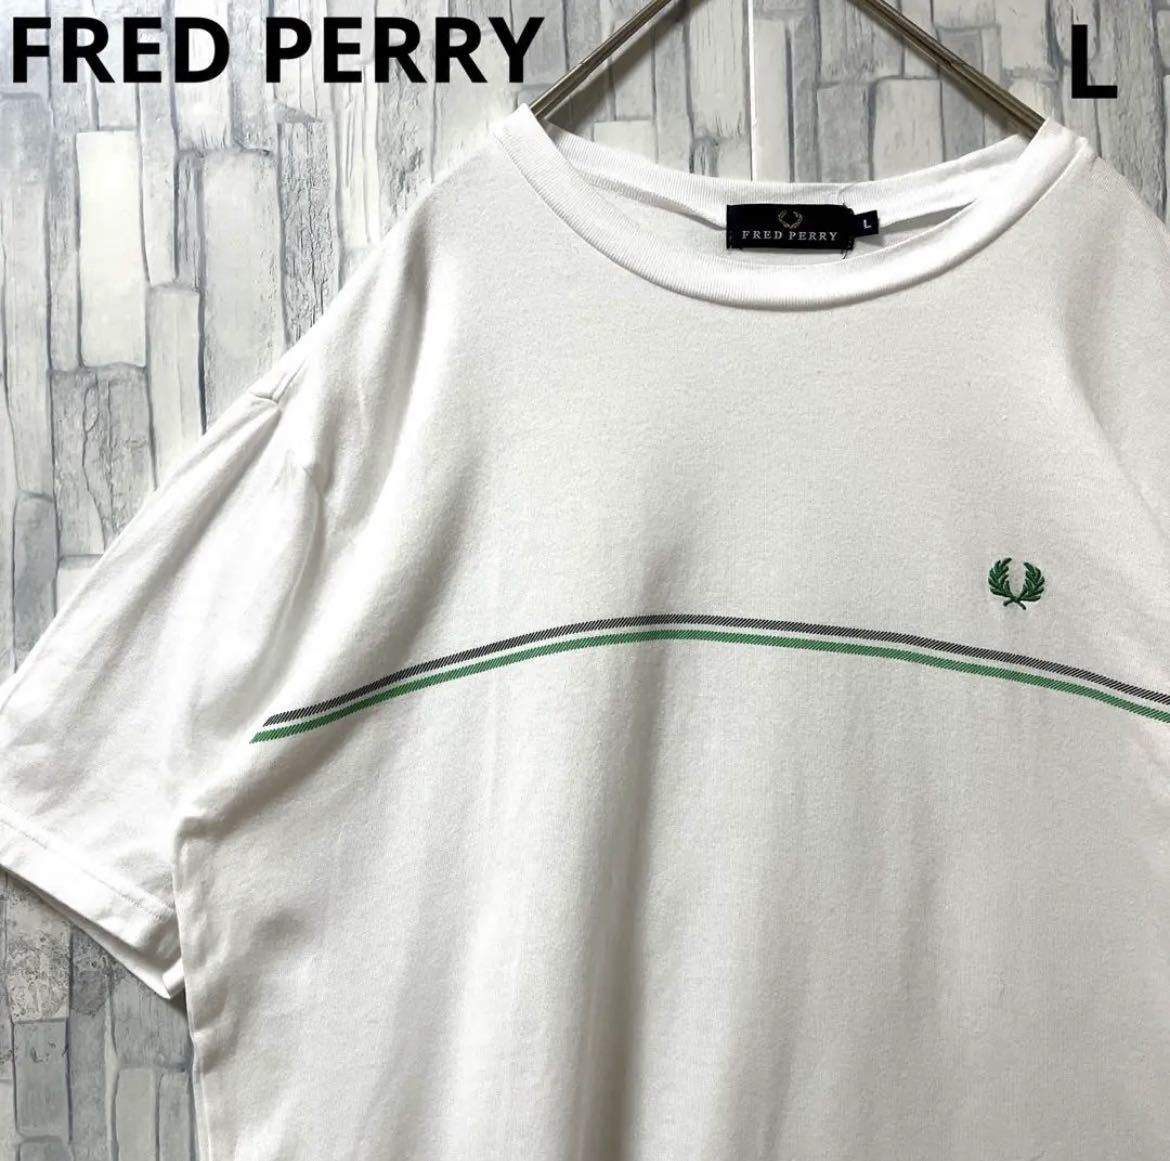 FRED PERRY ... красный ...  короткие рукава   футболка   размер  L  белый   простой  лого   ... point  лого    вышивание   лого    доставка бесплатно 